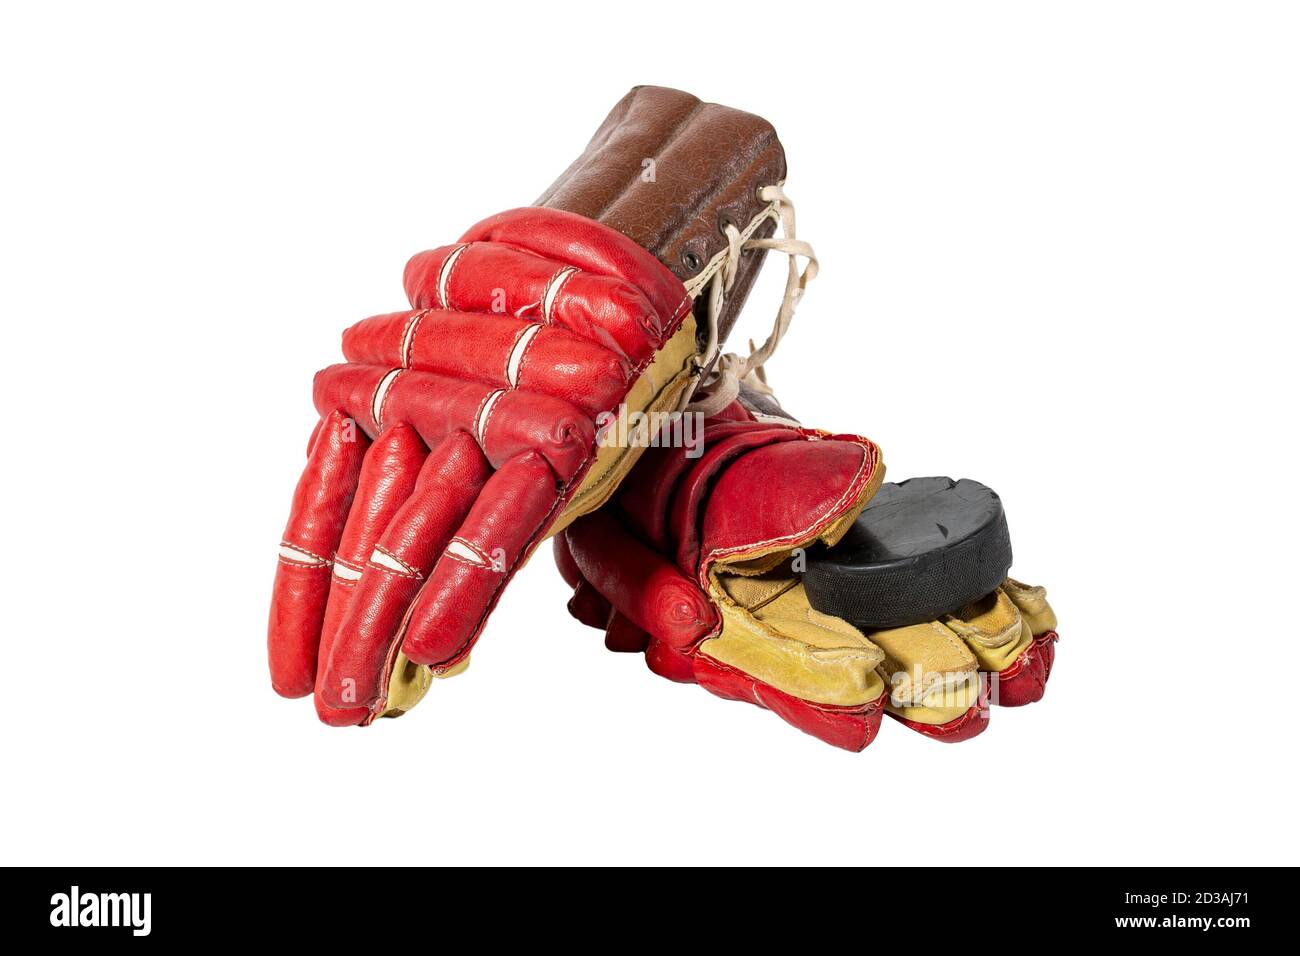 Vieux gants de hockey rouge pour gardien de but. Isolé sur fond blanc Banque D'Images